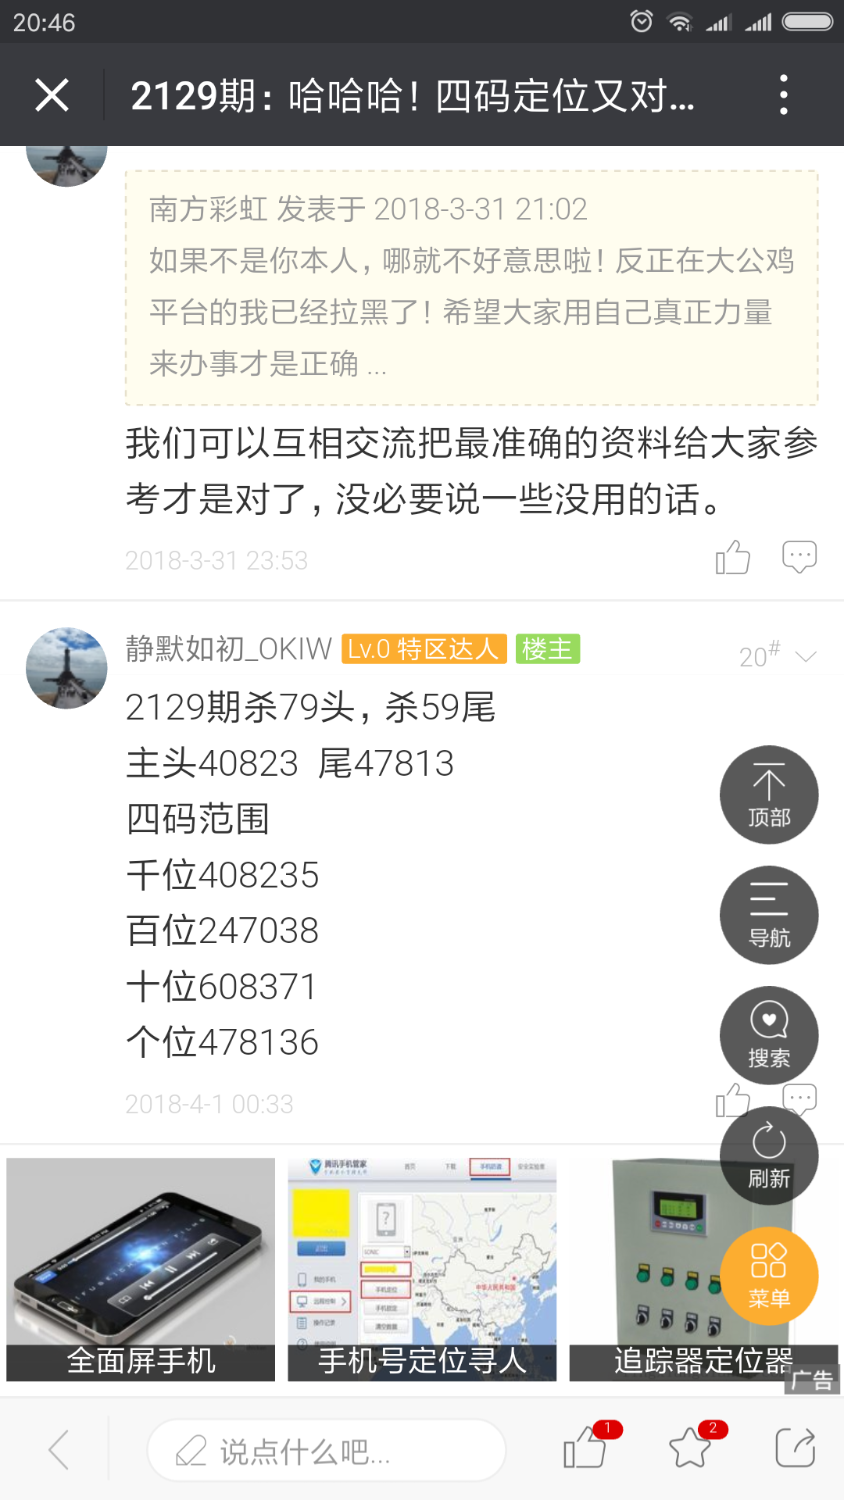 Screenshot_2018-04-01-20-46-52-716_com.tencent.mm.png